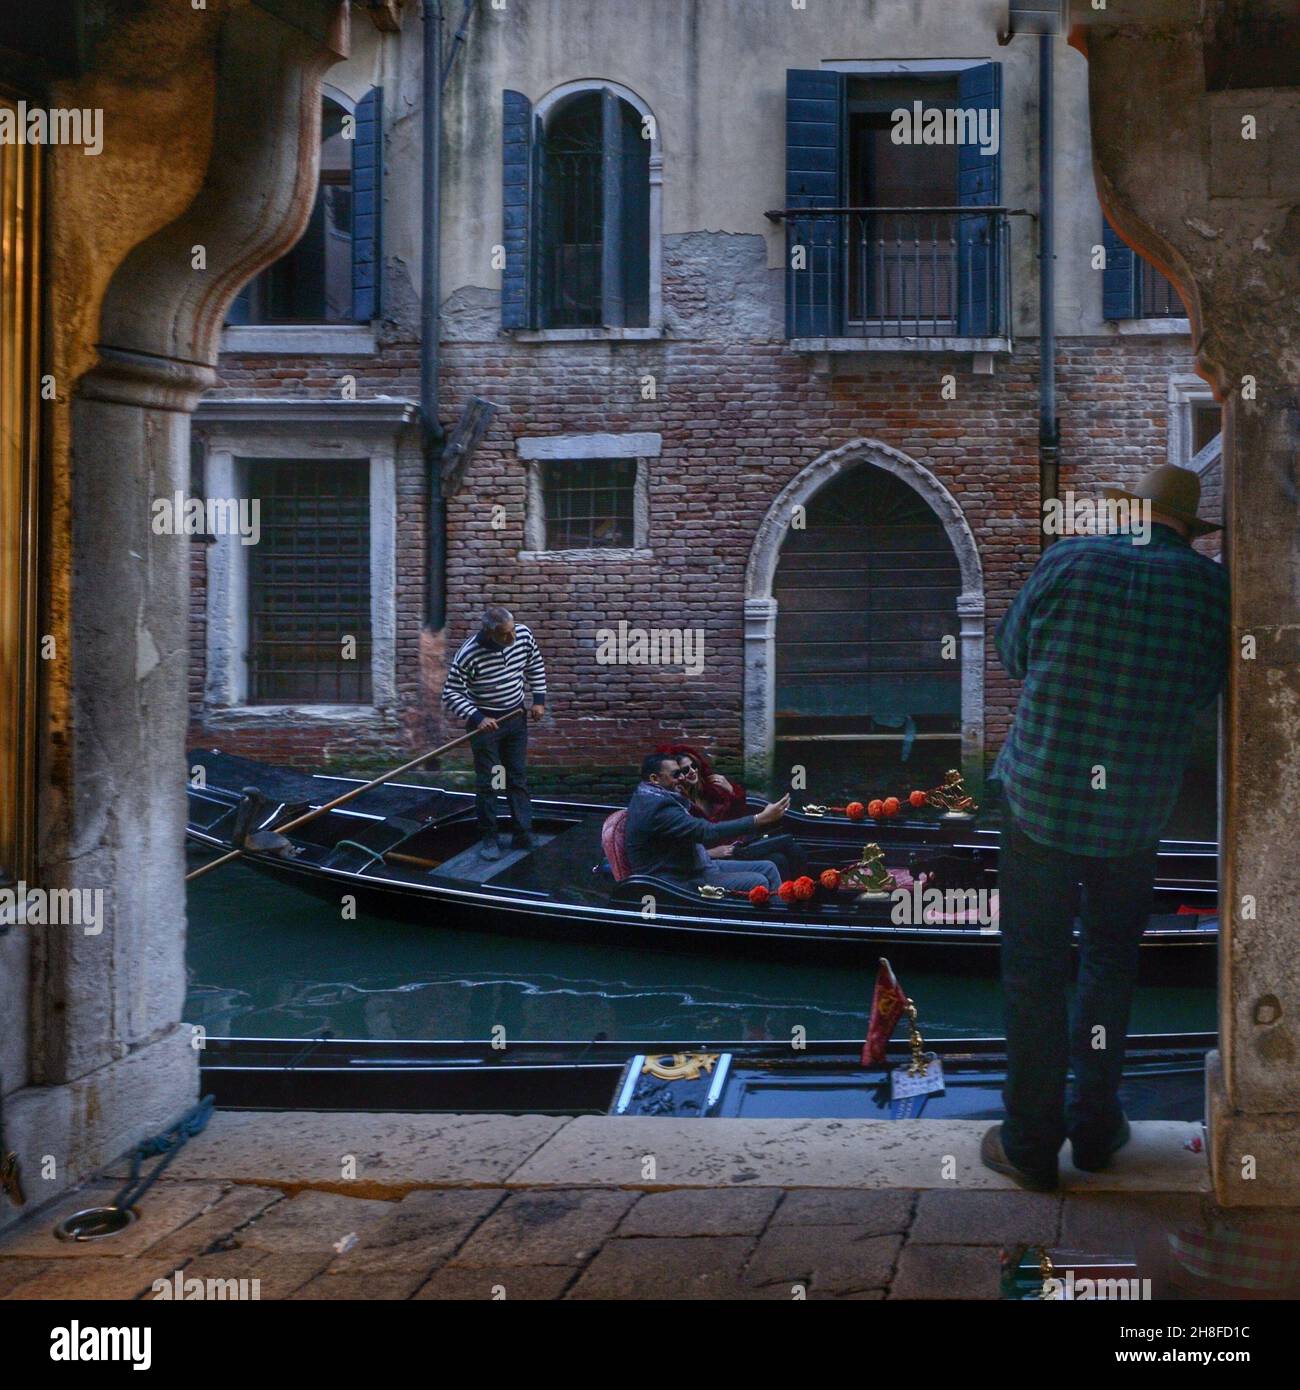 Vue sur une boutique vénitienne typique à proximité d'un canal au crépuscule.Un touriste prend une photo lorsqu'une gondole passe Banque D'Images